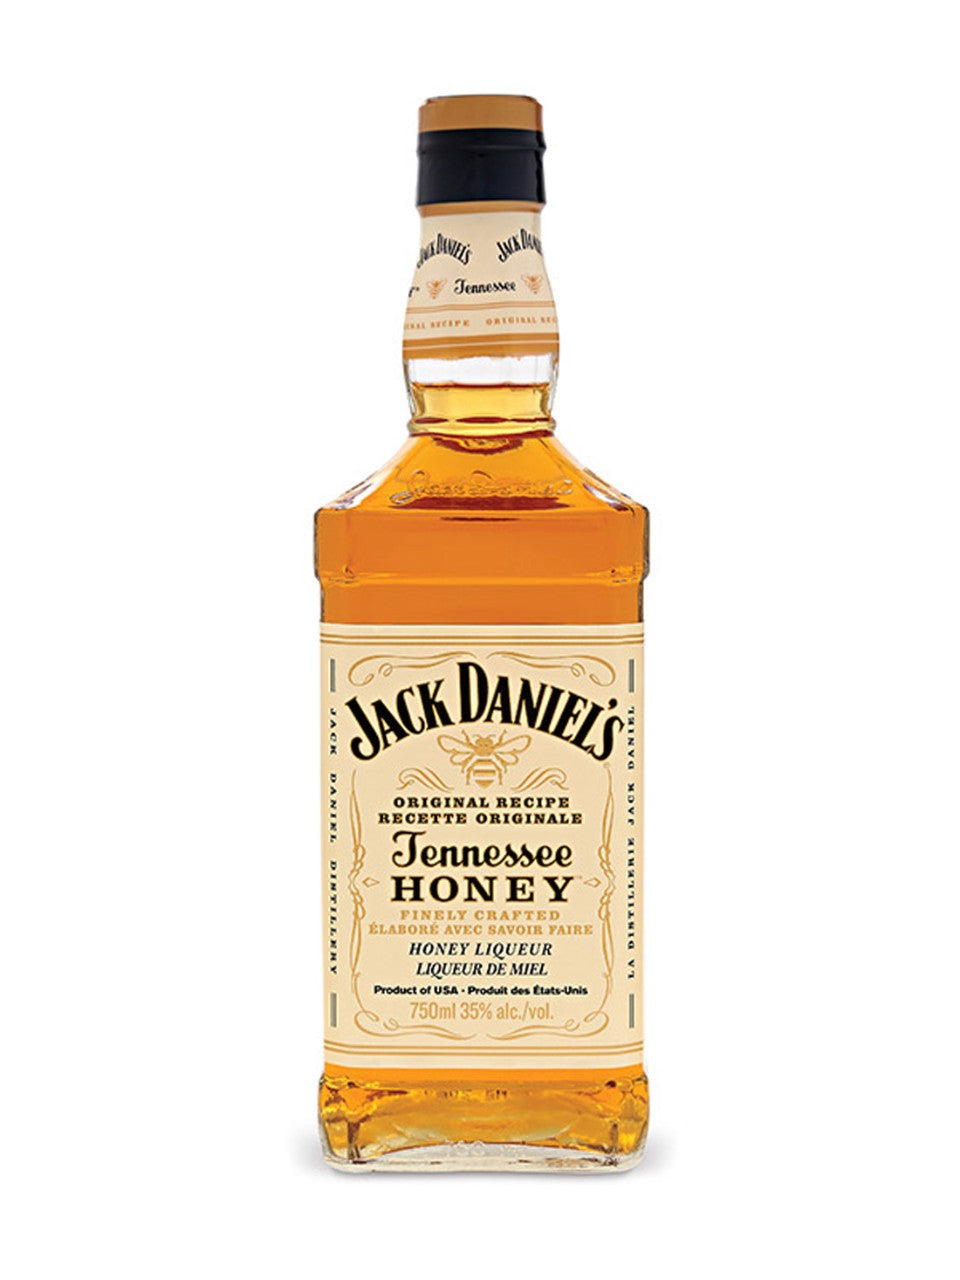 Jack Daniel's Tennessee Honey 750 mL bottle